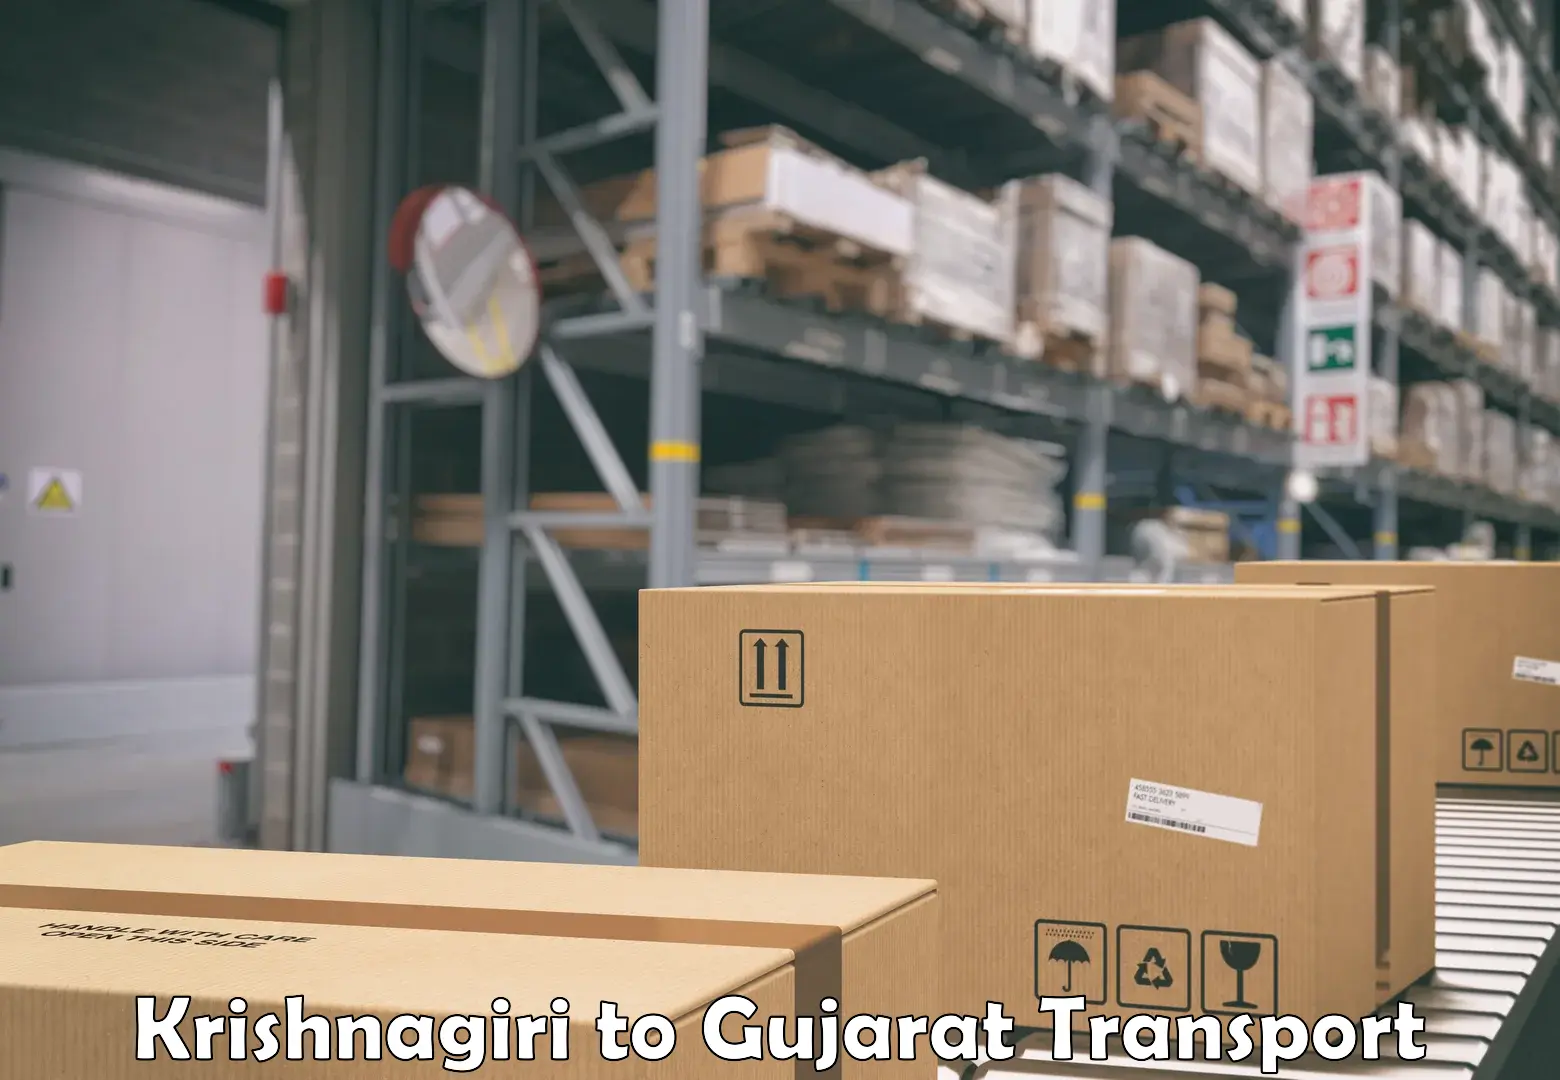 Lorry transport service Krishnagiri to Narmada Gujarat